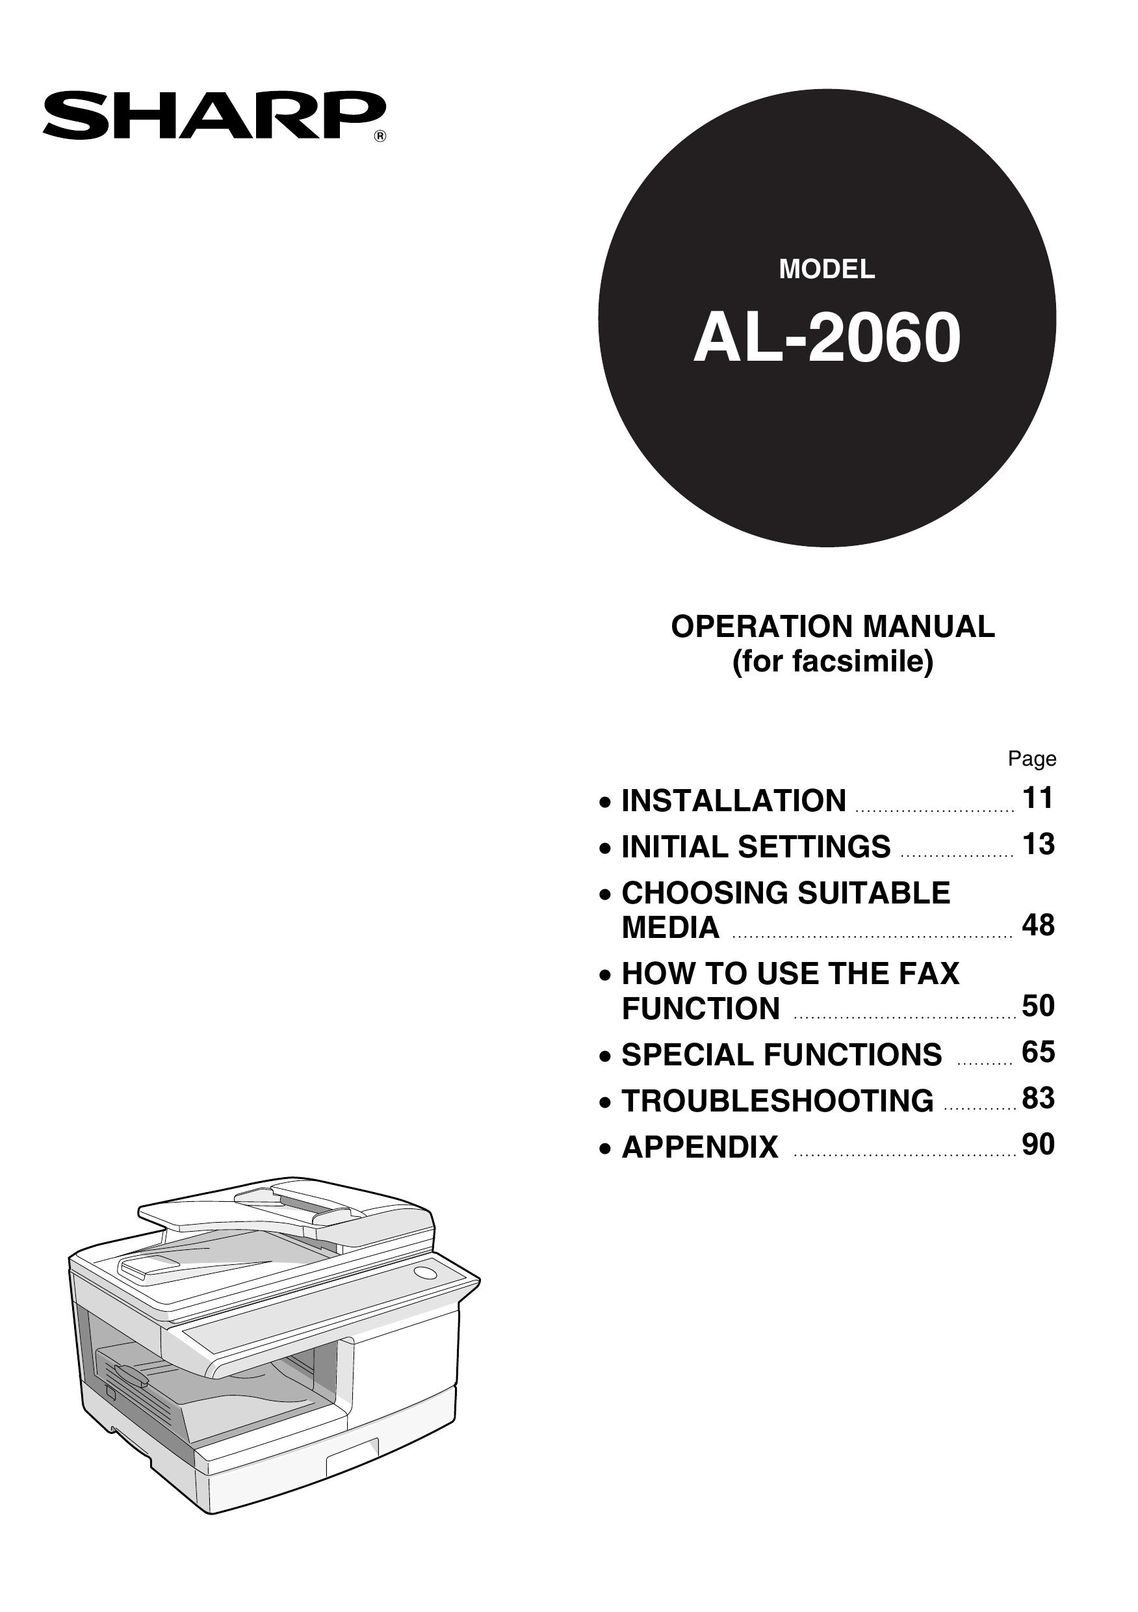 Sharp AL-2060 Fax Machine User Manual